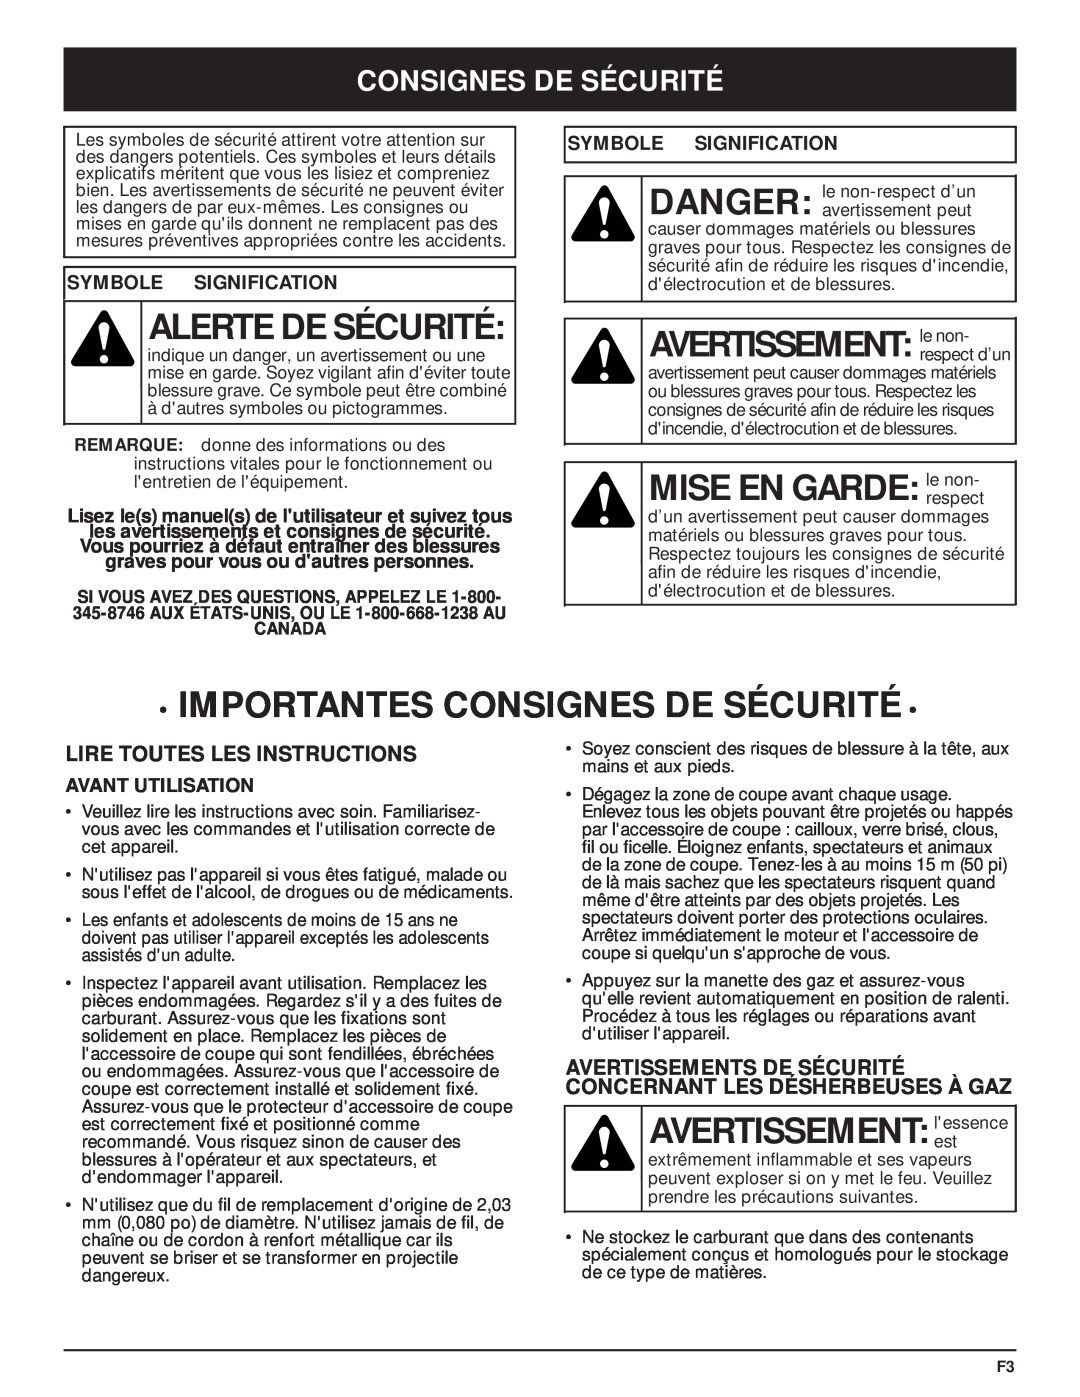 McCulloch MT705 manual Alerte De Sécurité, AVERTISSEMENT le non, MISE EN GARDE le non, Importantes Consignes De Sécurité 